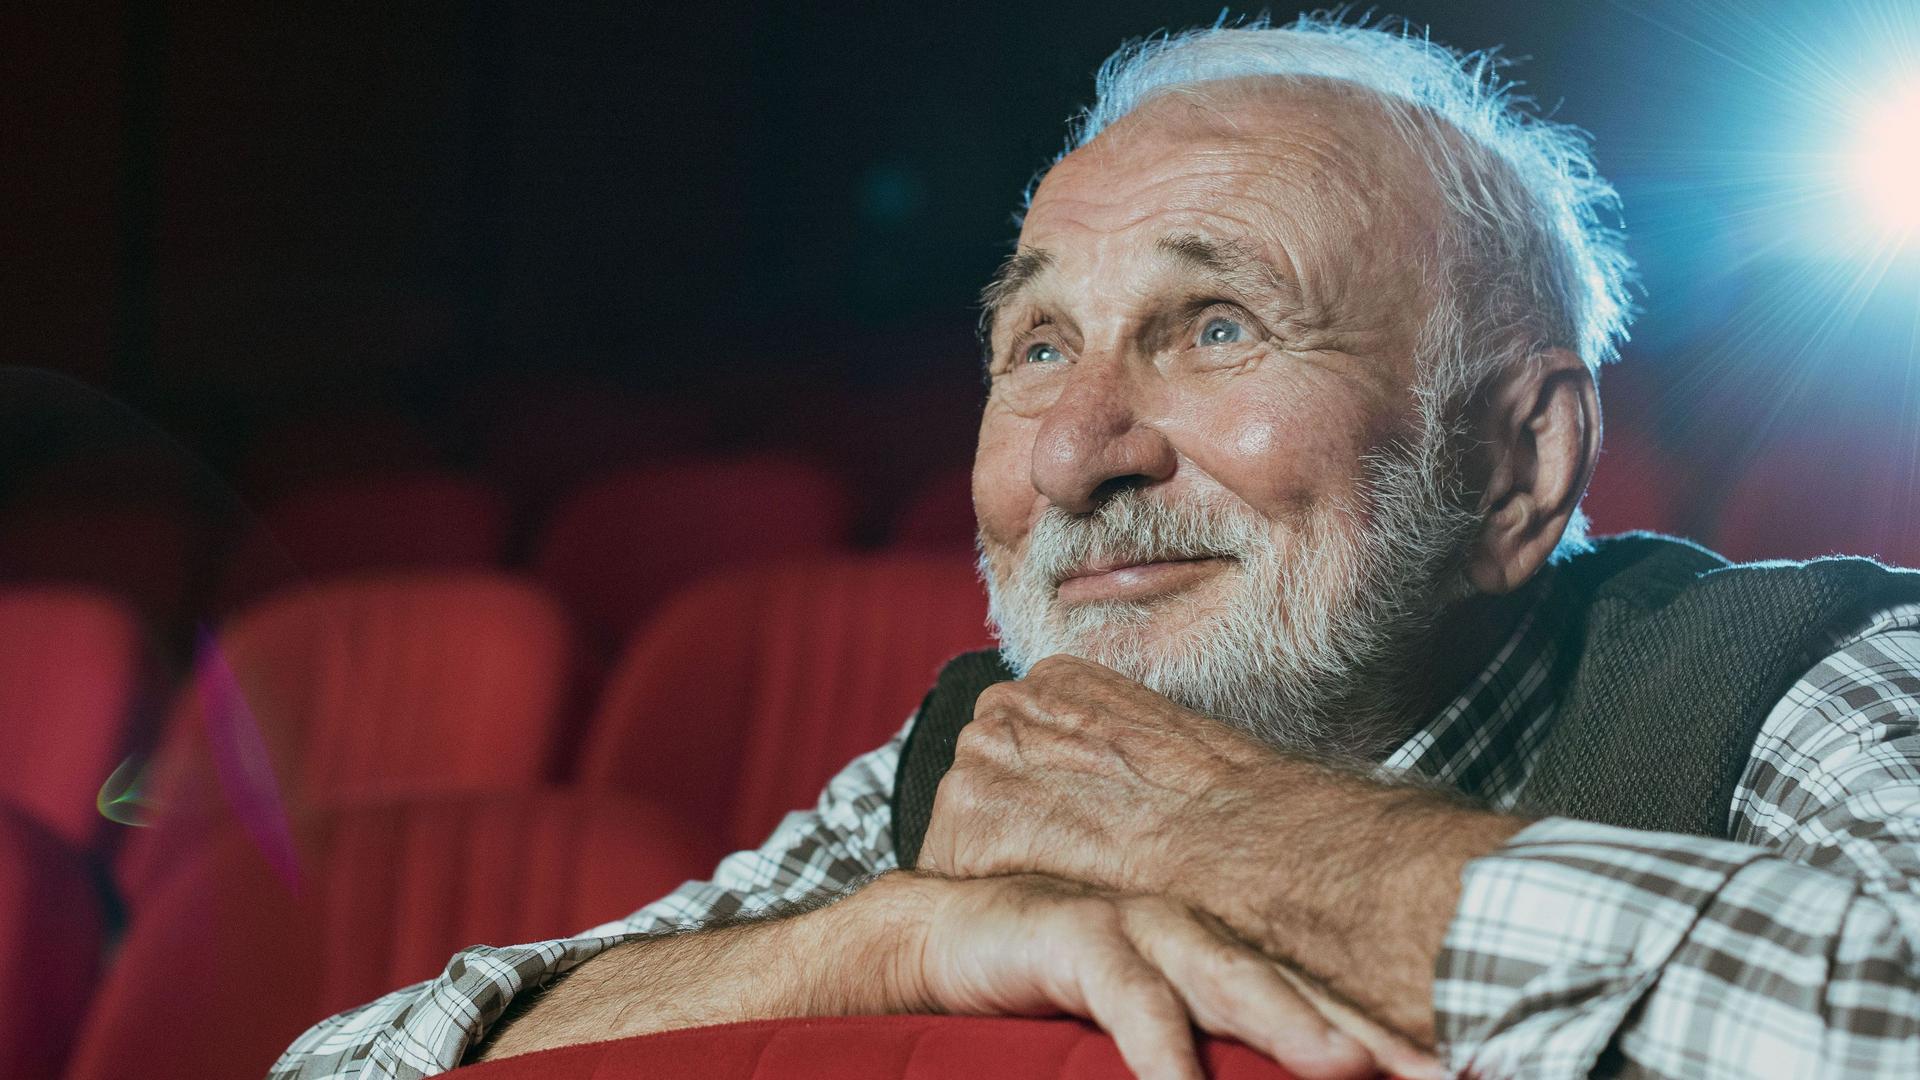 Ein Senior mit grauen Haaren und Bart sitzt in einem Kino und schaut lächelnd einen Film.